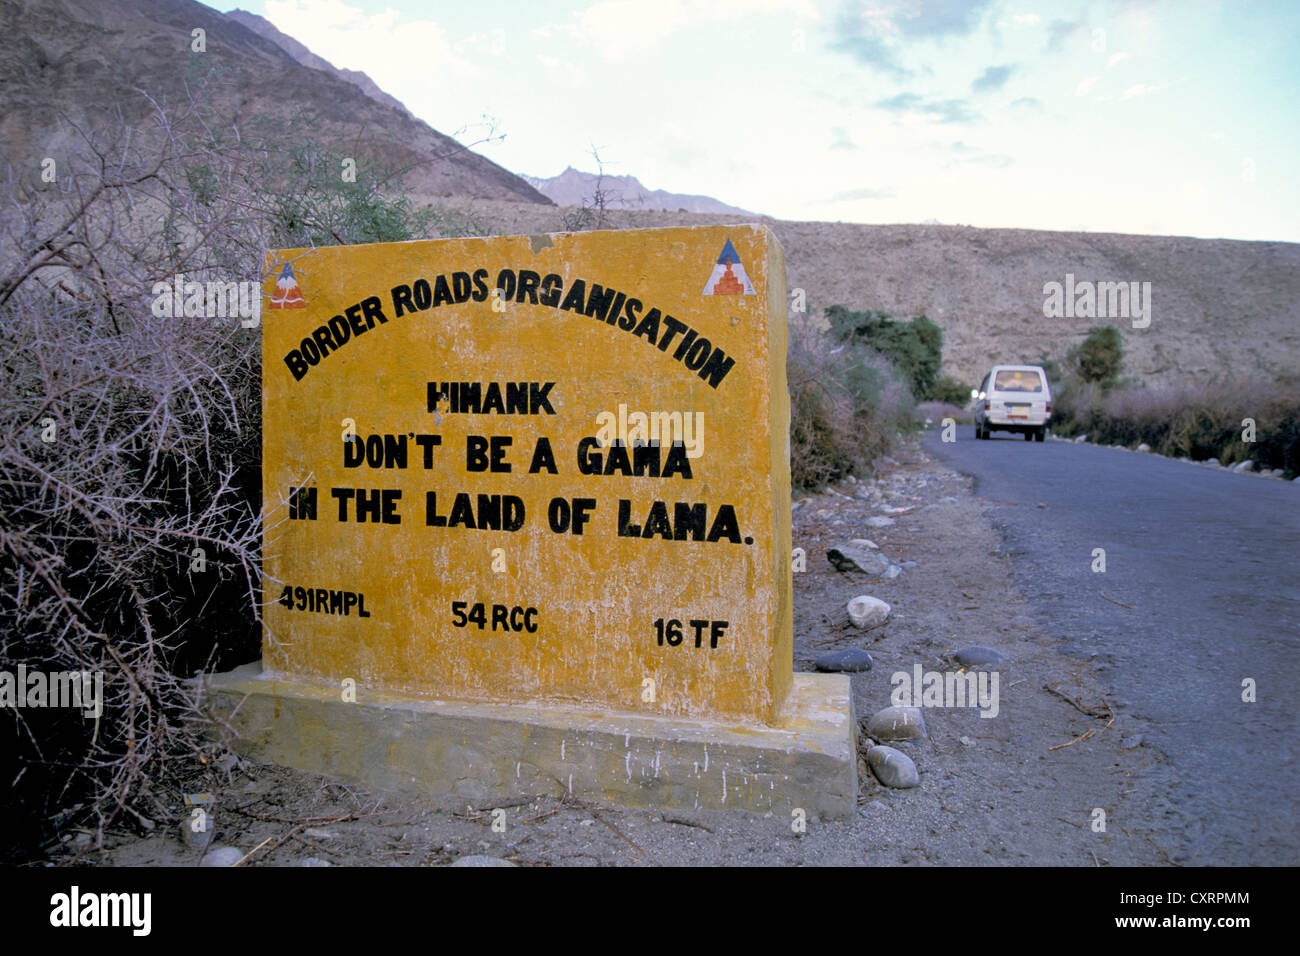 Signe de pierre, humoristique et poétique invitation à conduire avec prudence, la Vallée de Nubra, Ladakh, Himalaya indien, le Jammu-et-Cachemire Banque D'Images